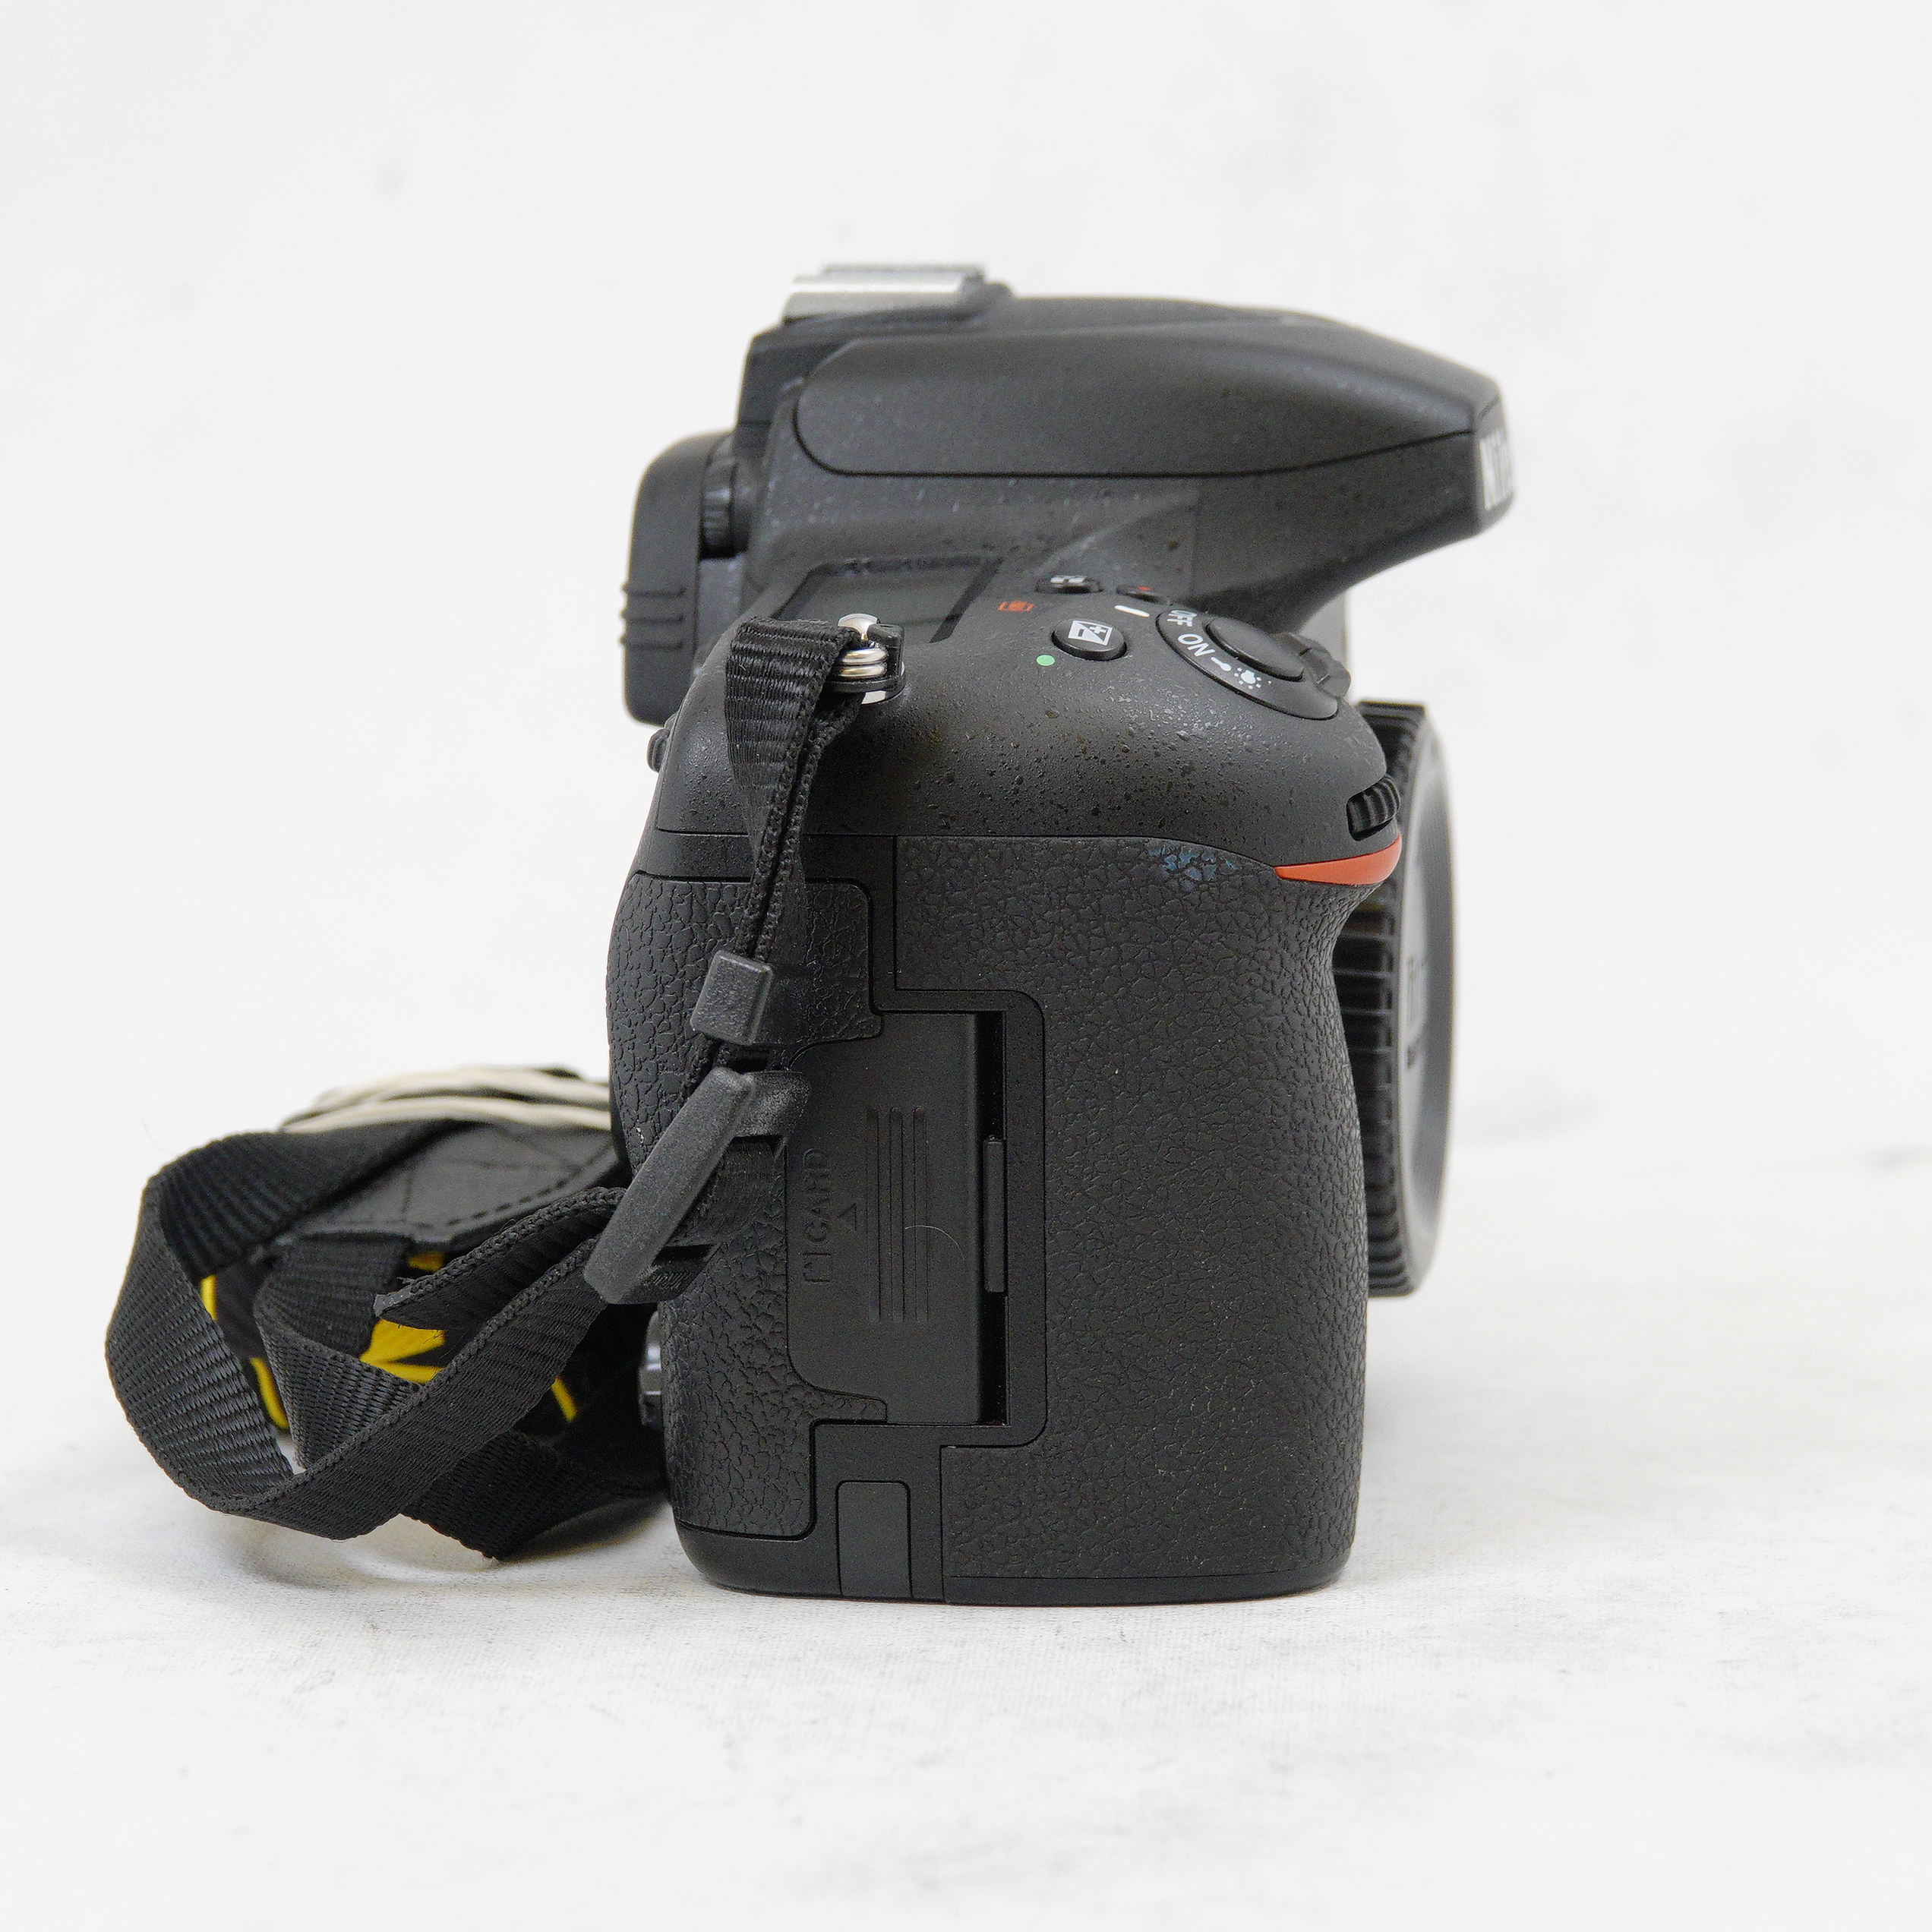 Nikon D750 DSLR - Usado